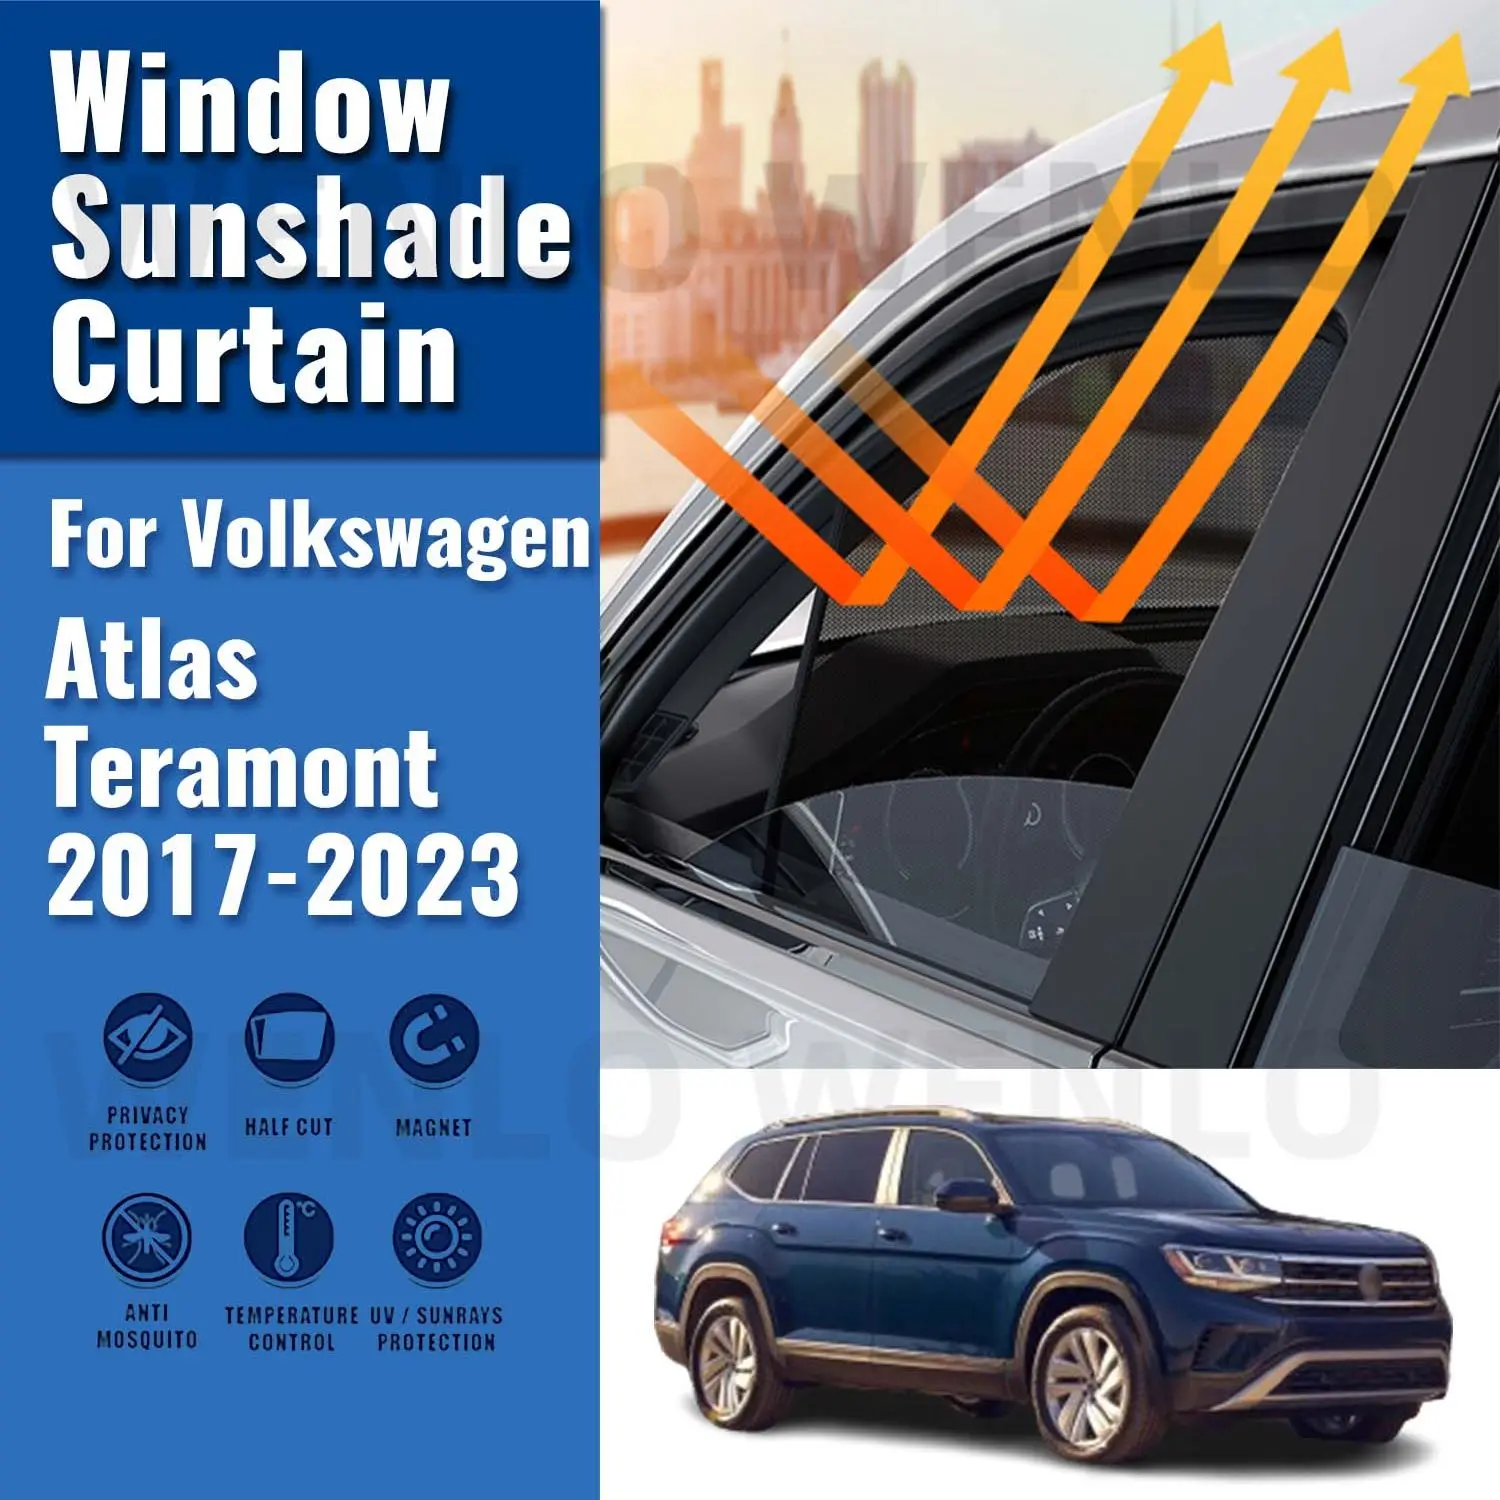 VW Atlas Teramont 2017-2023 Yan Pencere Güneş Gölge Siperliği Manyetik araba güneşliği Ön Arka Cam Çerçeve Perdeler Kalkan